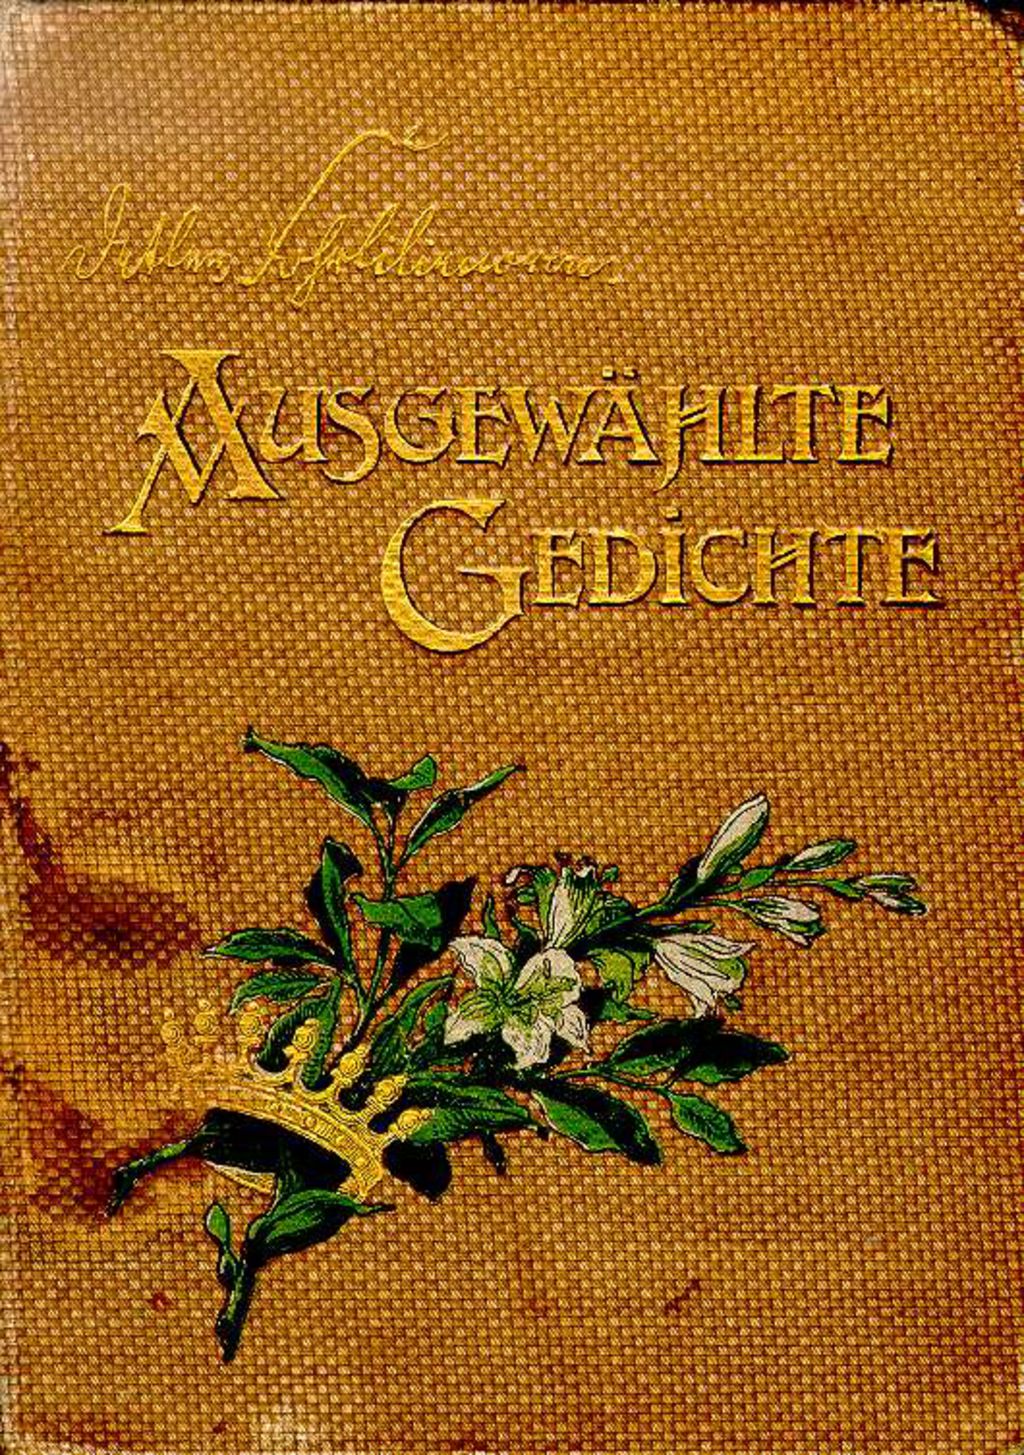 Exponat: Buch: Liliencron, Detlev von "Ausgewählte Gedichte", 1900